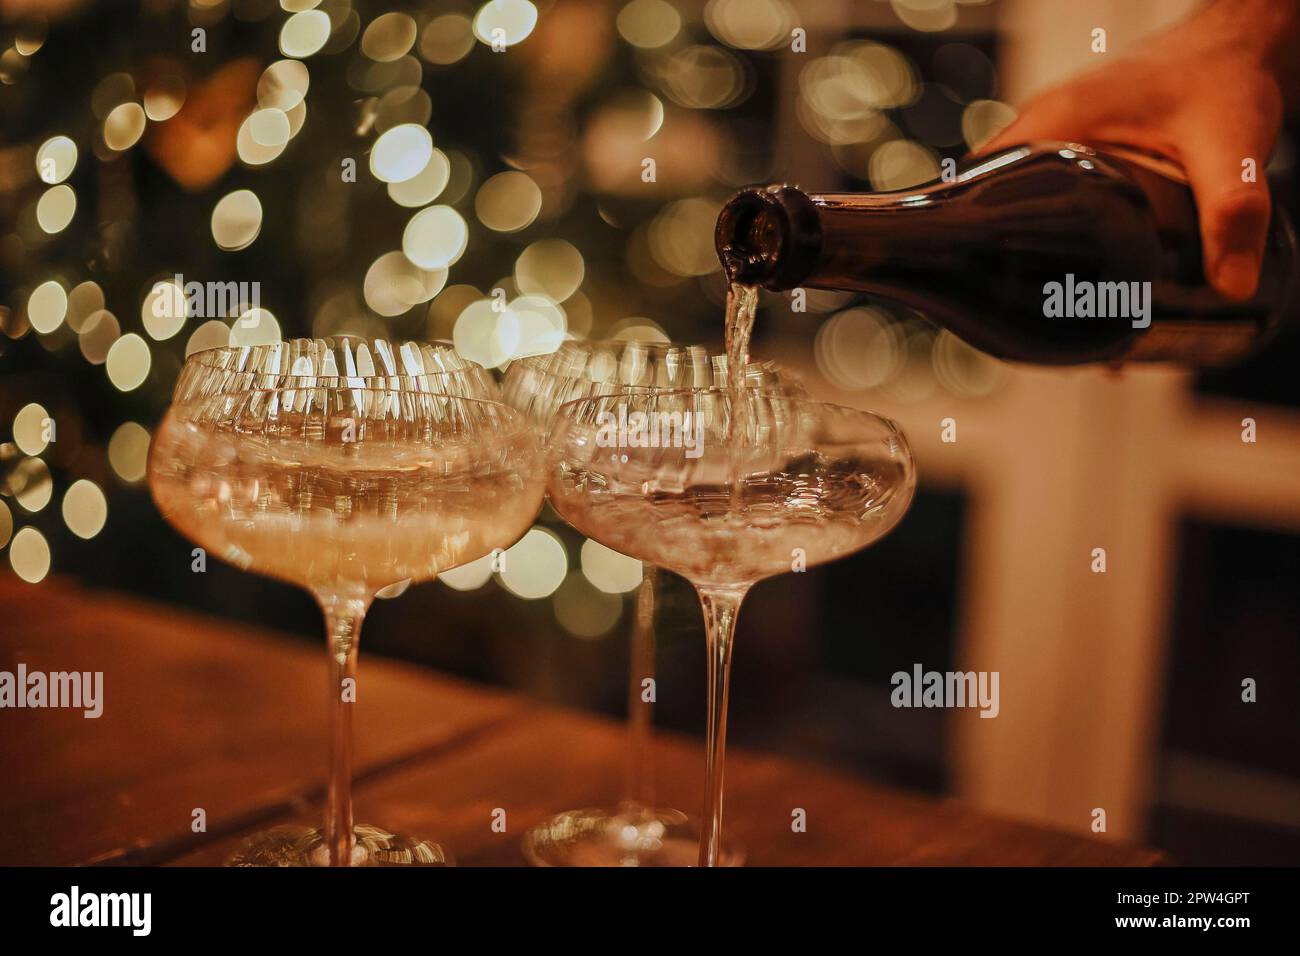 Silvesterfeier. Mann, der Champagner in Gläser gießt, steht auf dem Tisch mit festlichem Weihnachtsessen, Kerzen und Geschenkverpackungen gegen verschwommenes Bild Stockfoto